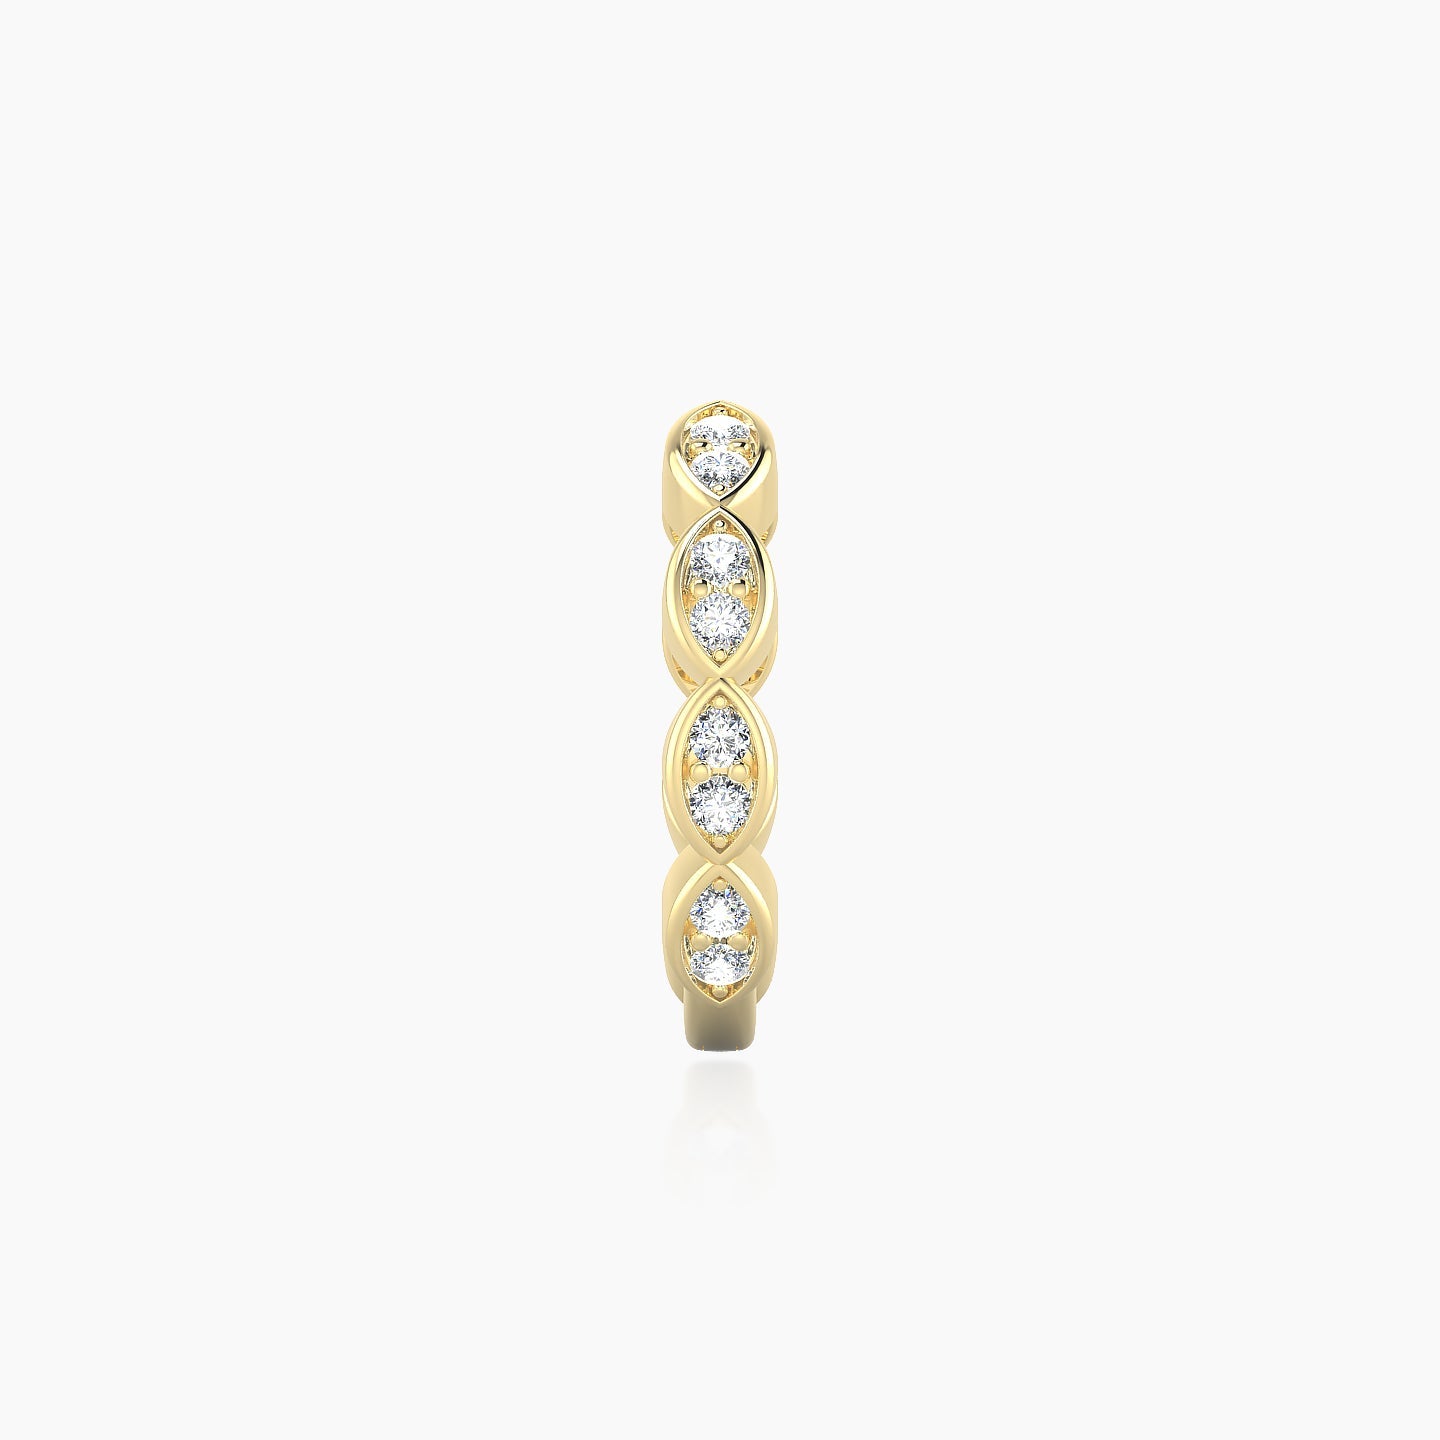 Hathor | 18k Yellow Gold 9.5 mm Diamond Nose Ring Piercing